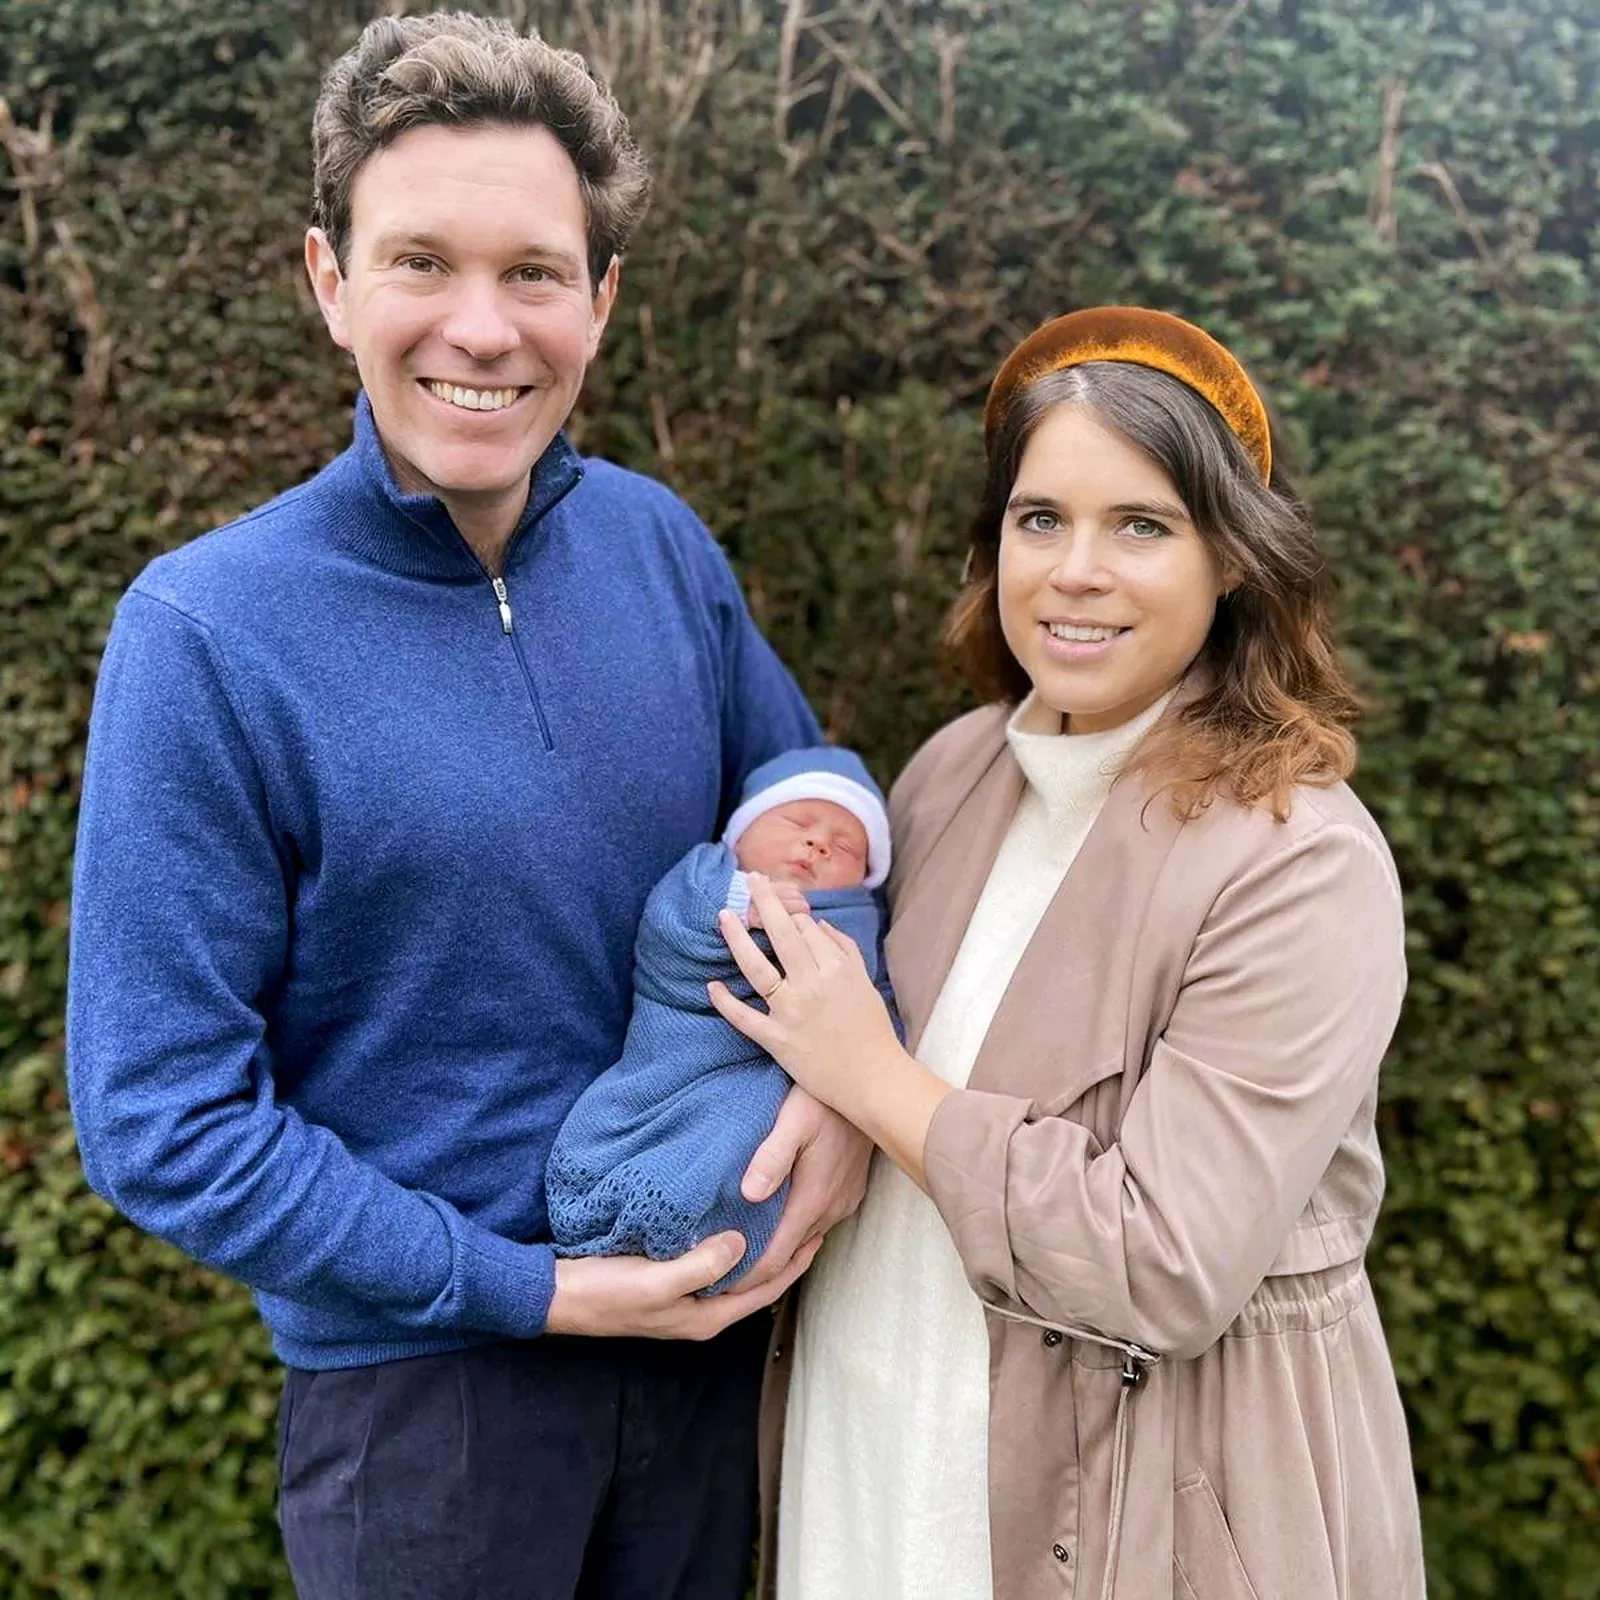 Принцесса Евгения и Джек Бруксбэнк с новорожденным сыном Огастом Филиппом Хоукум Бруксбэнком, 2021 г.